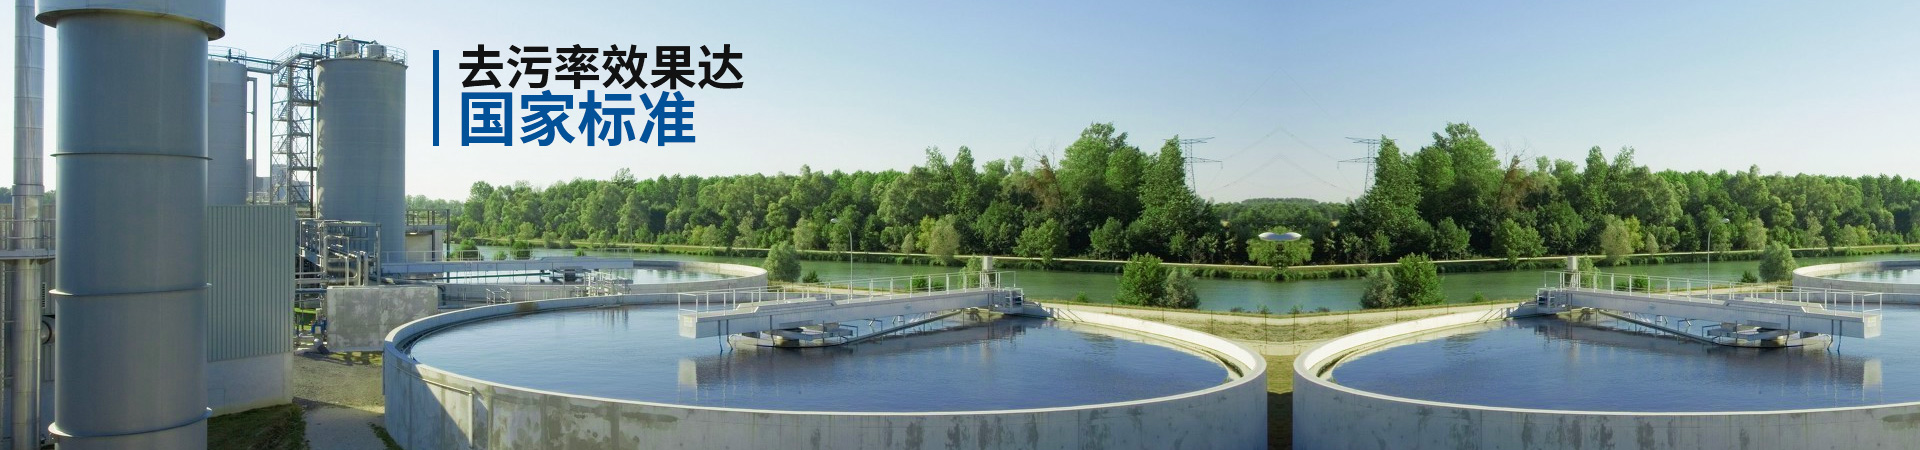 凯萨诺一体化污水处理设备去污率效果达到国家标准